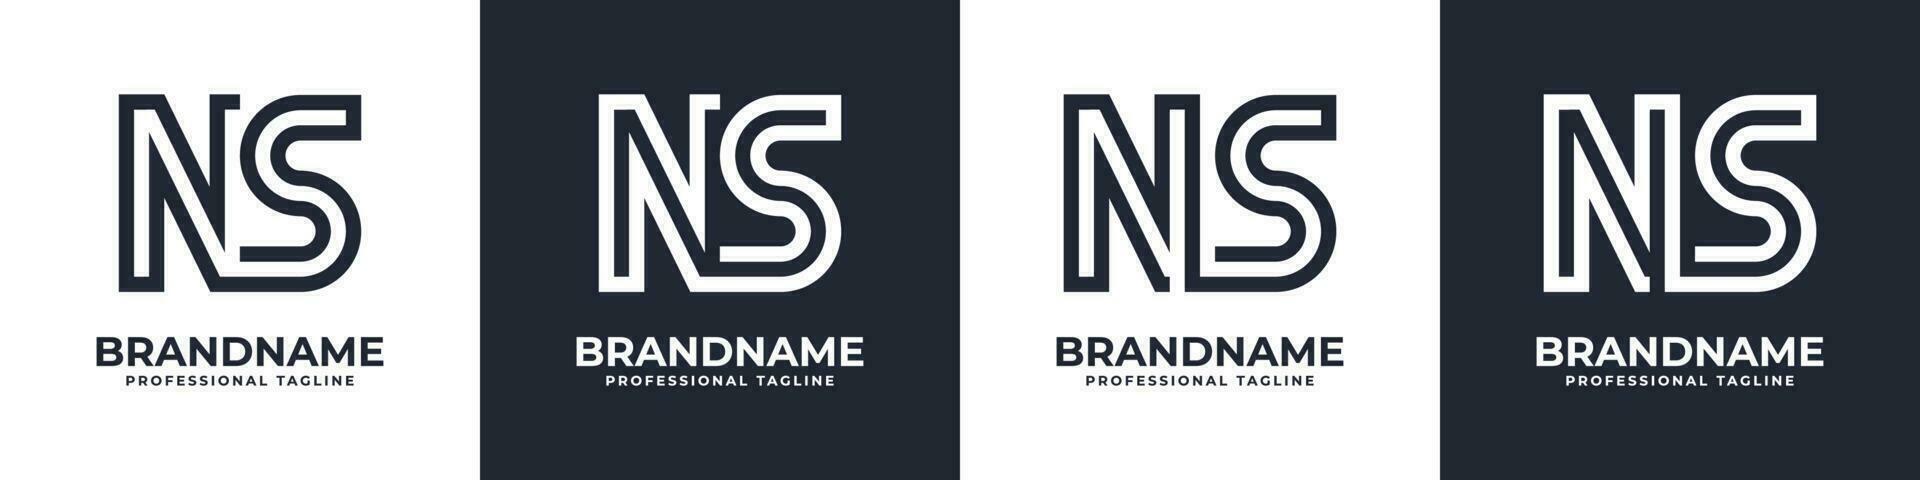 gemakkelijk NS monogram logo, geschikt voor ieder bedrijf met NS of sn voorletter. vector